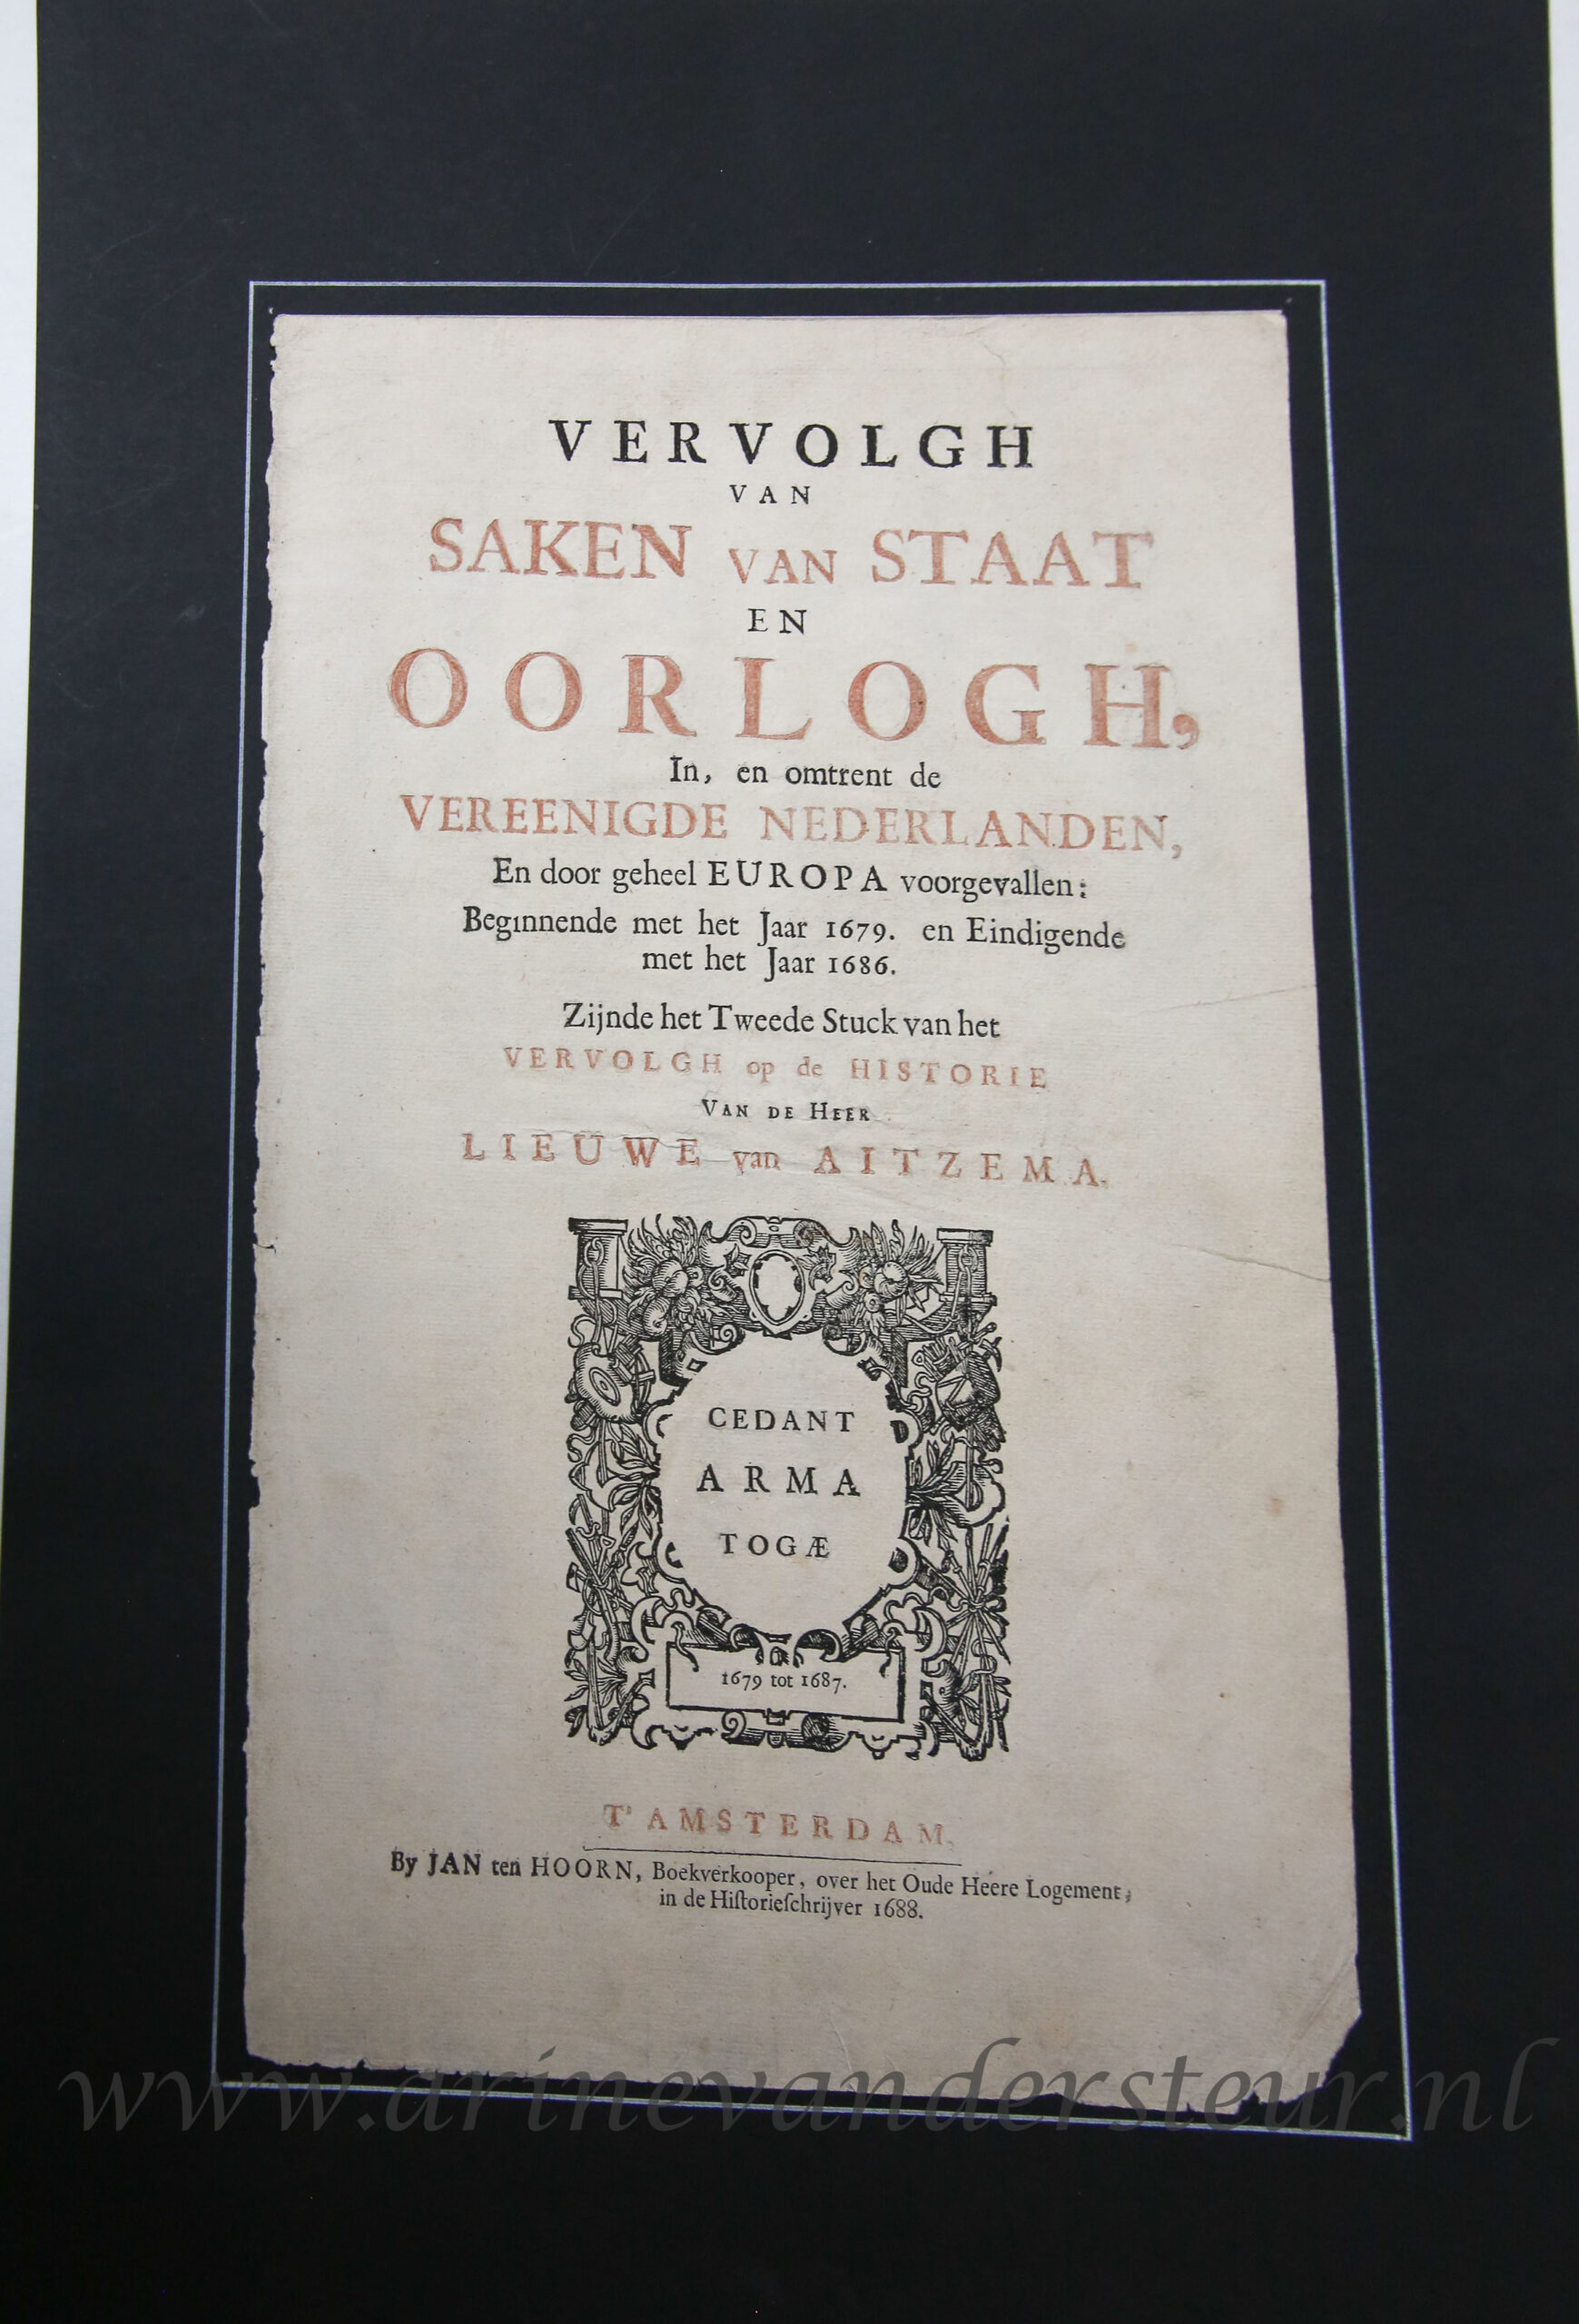 [Antique title page, 1687] VERVOLGH VAN SAKEN VAN STAAT EN OORLOGH, published 1687, 1 p.